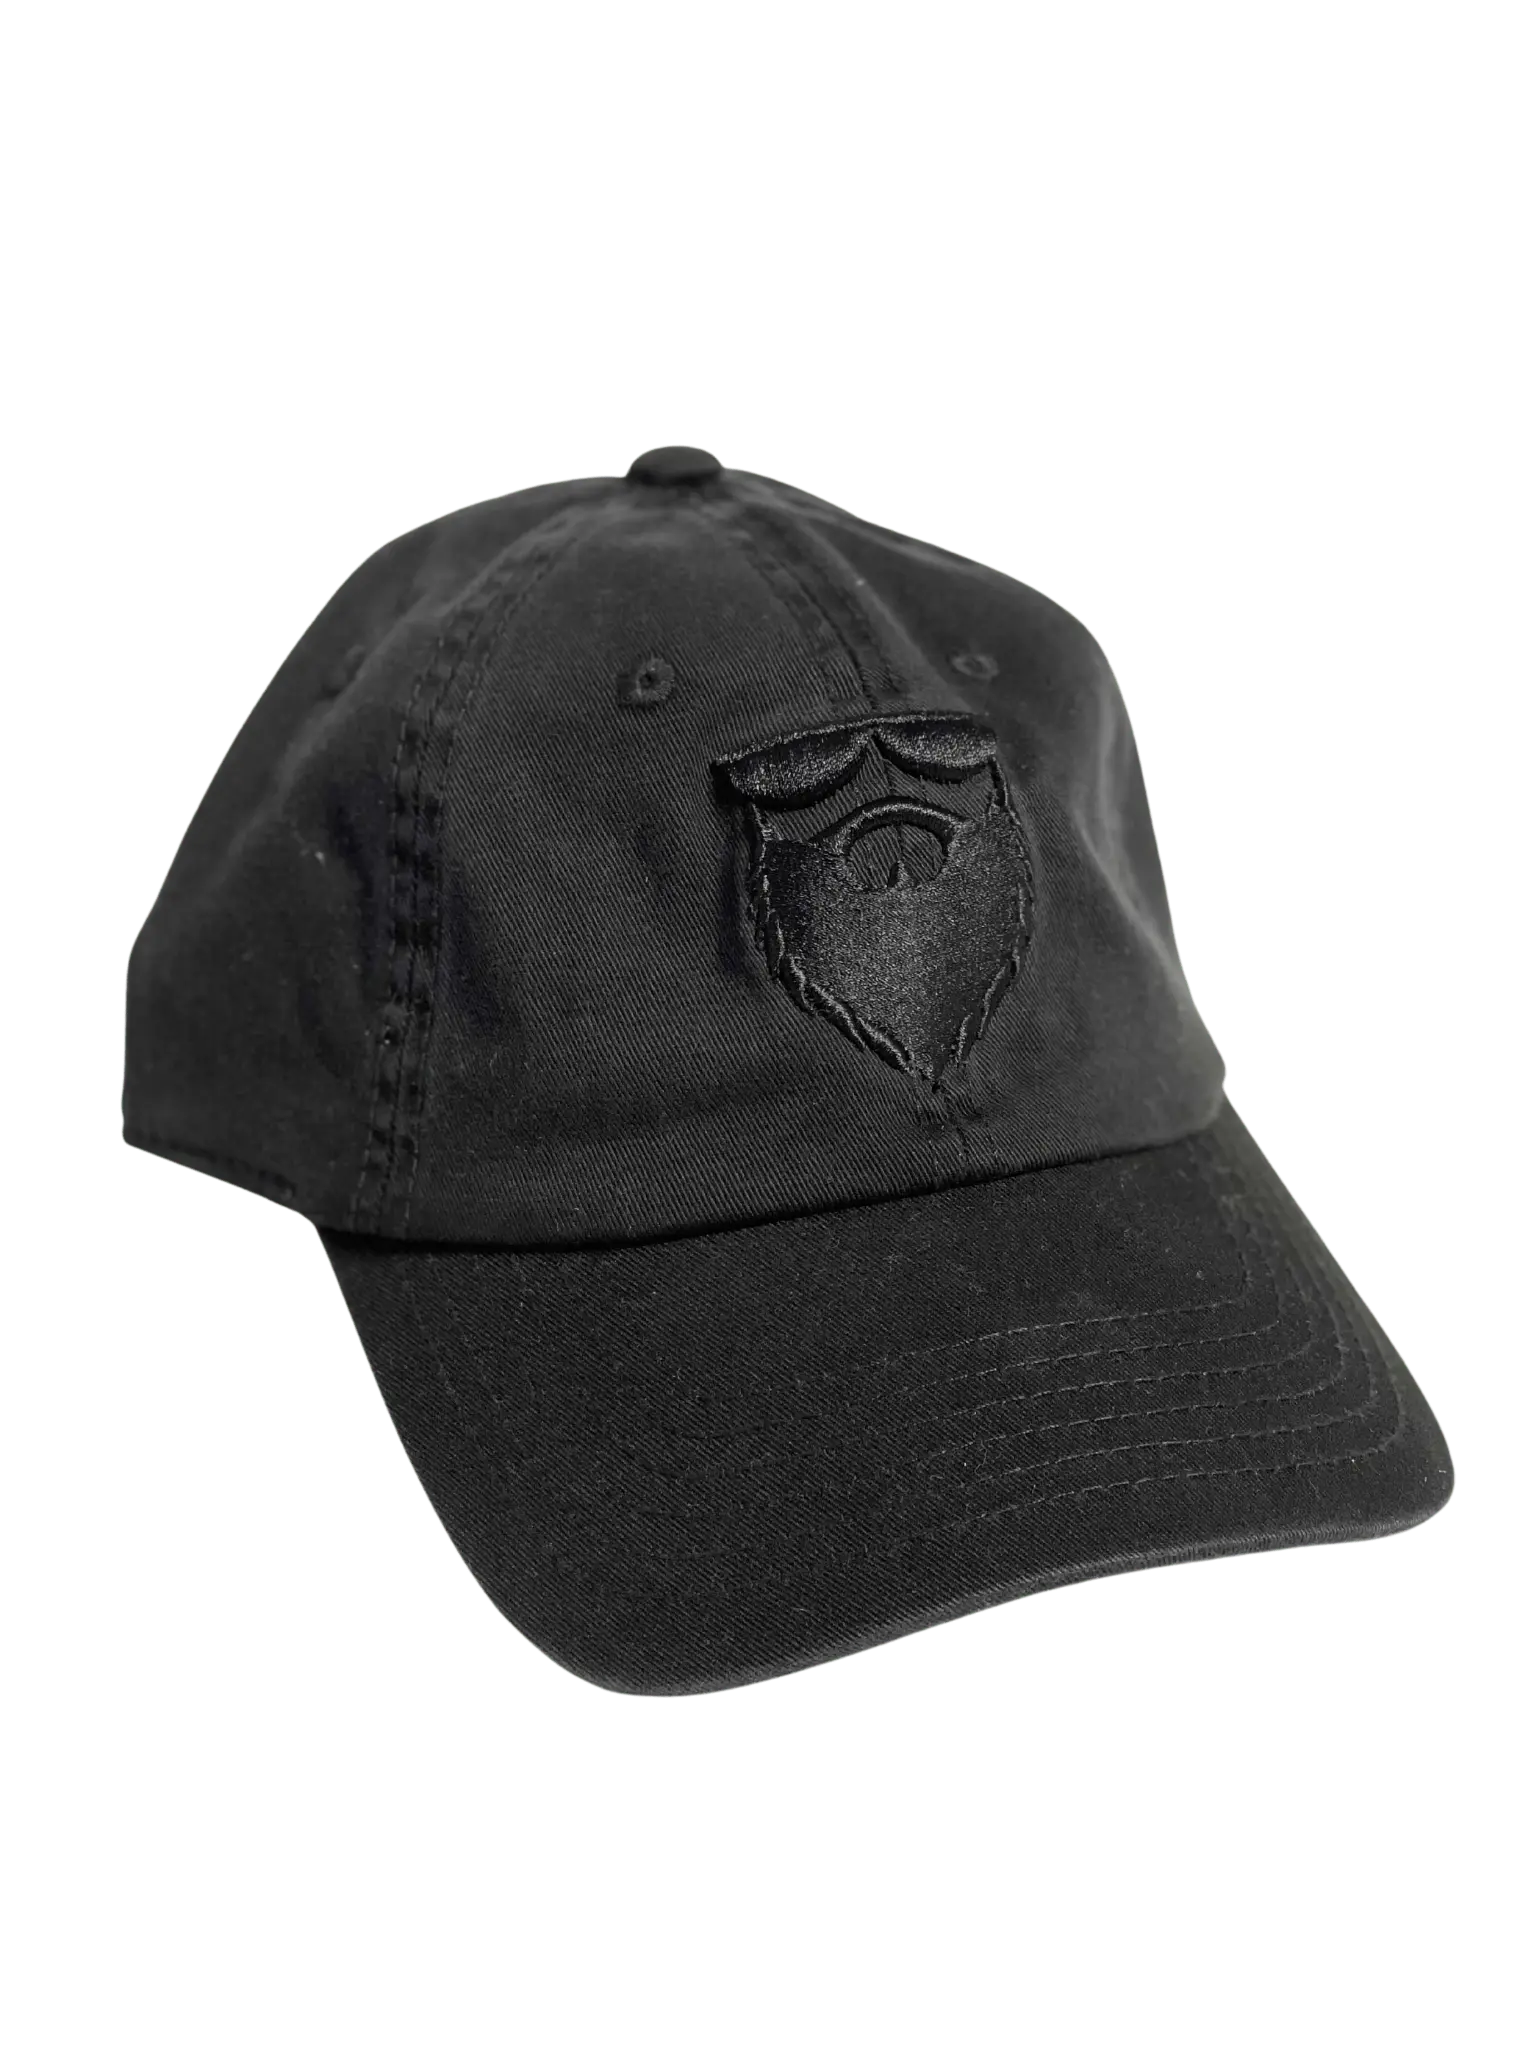 NSL OG Beard Logo Curved Brim Black Dad Hat|Hat